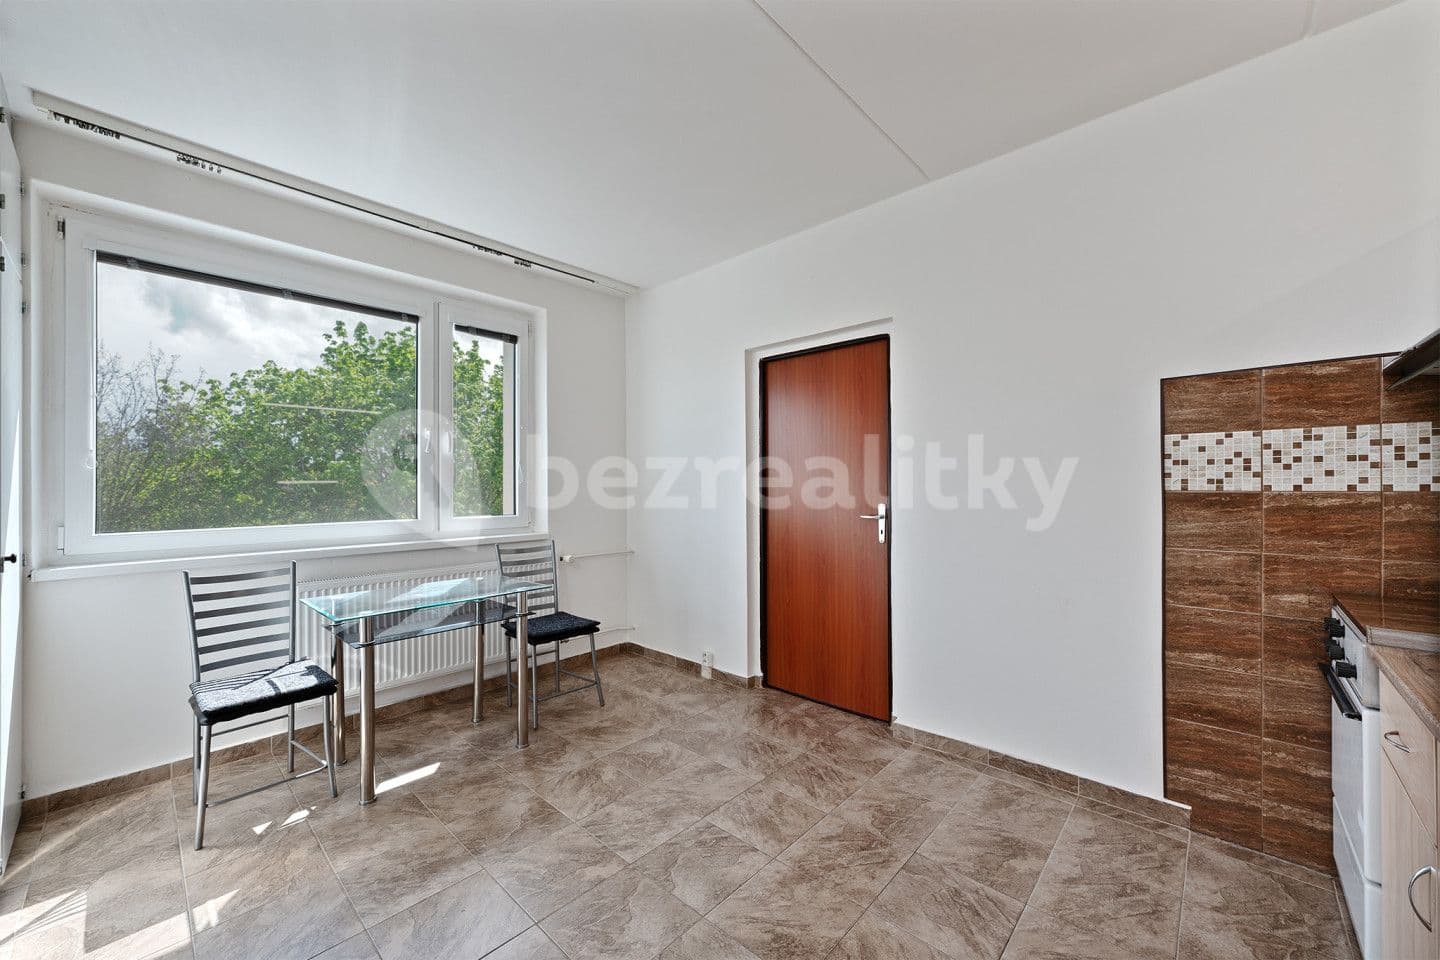 1 bedroom flat for sale, 36 m², Kamenný vrch, Chomutov, Ústecký Region